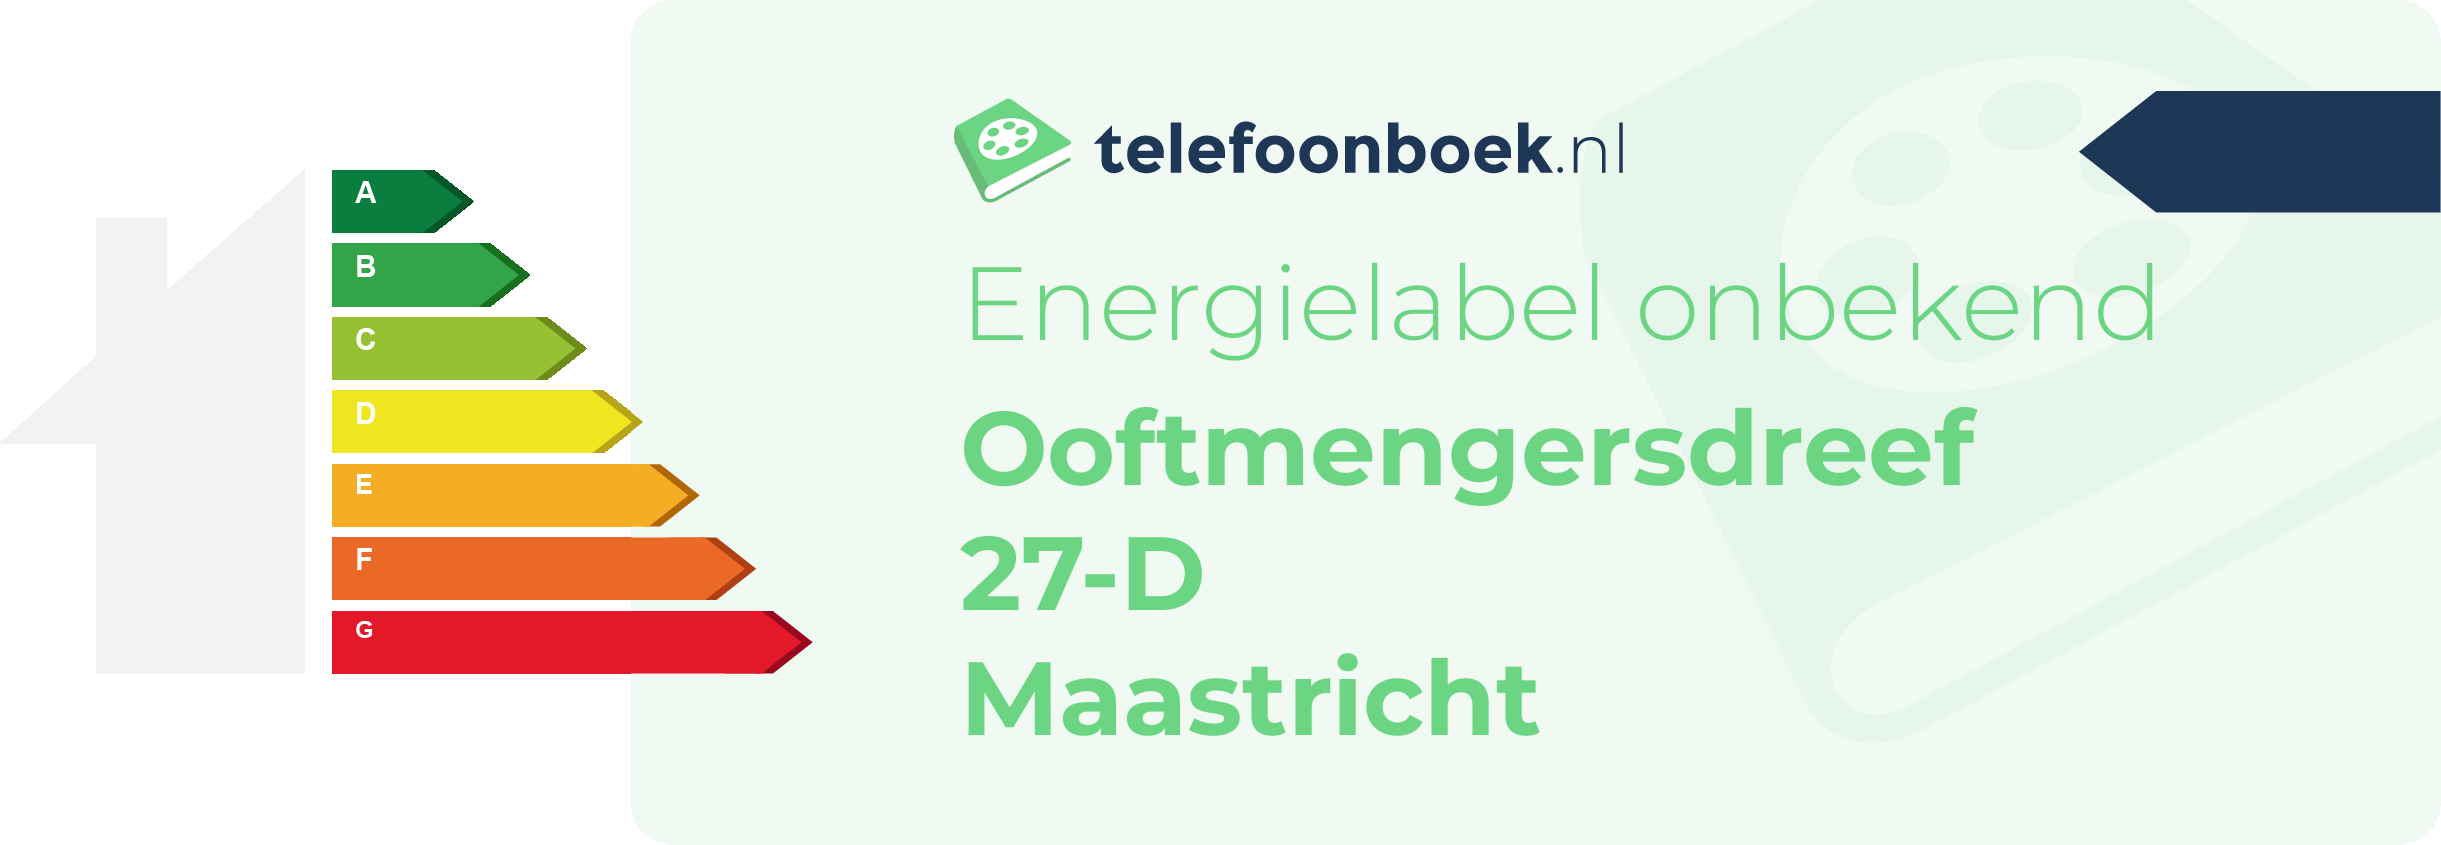 Energielabel Ooftmengersdreef 27-D Maastricht